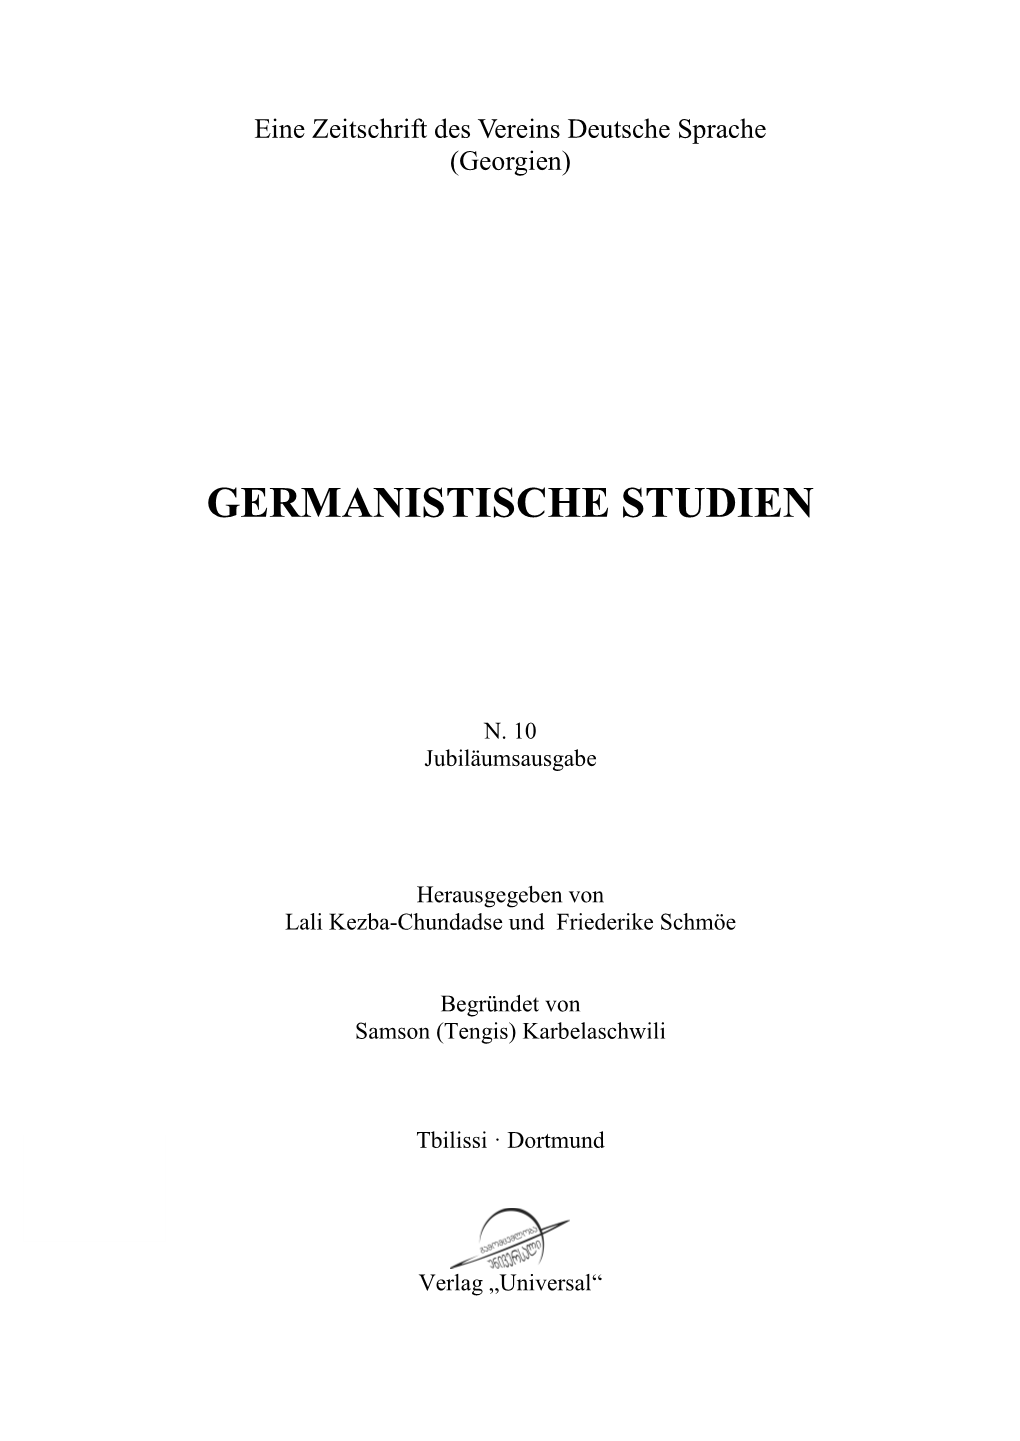 Germanistische Studien